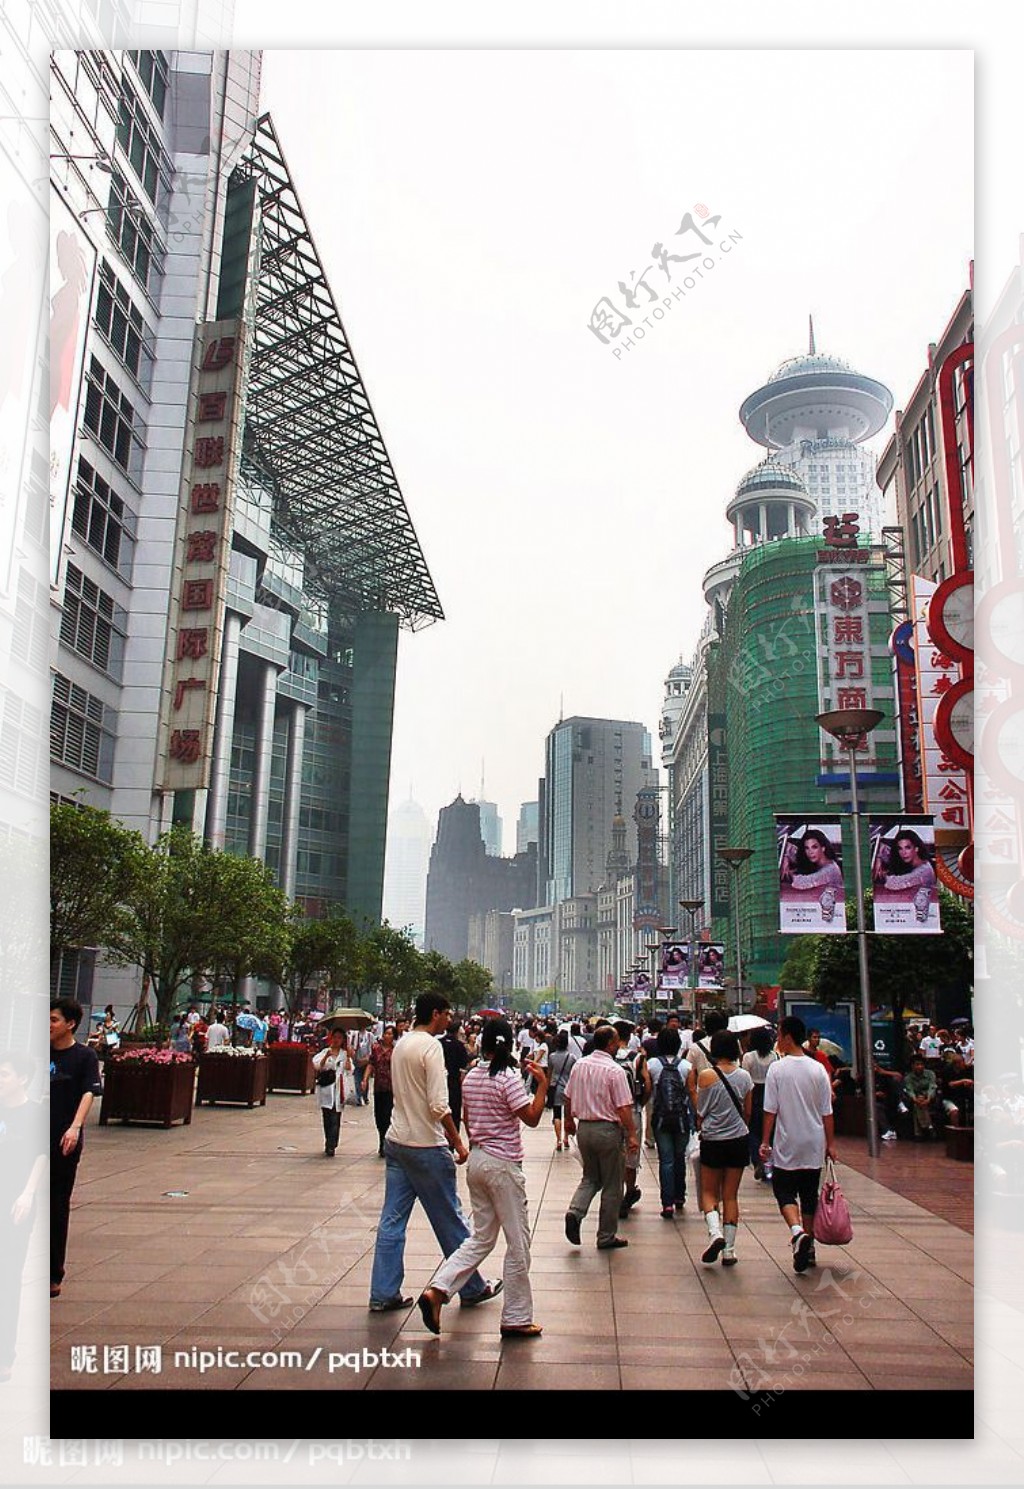 上海南京路步行街1图片